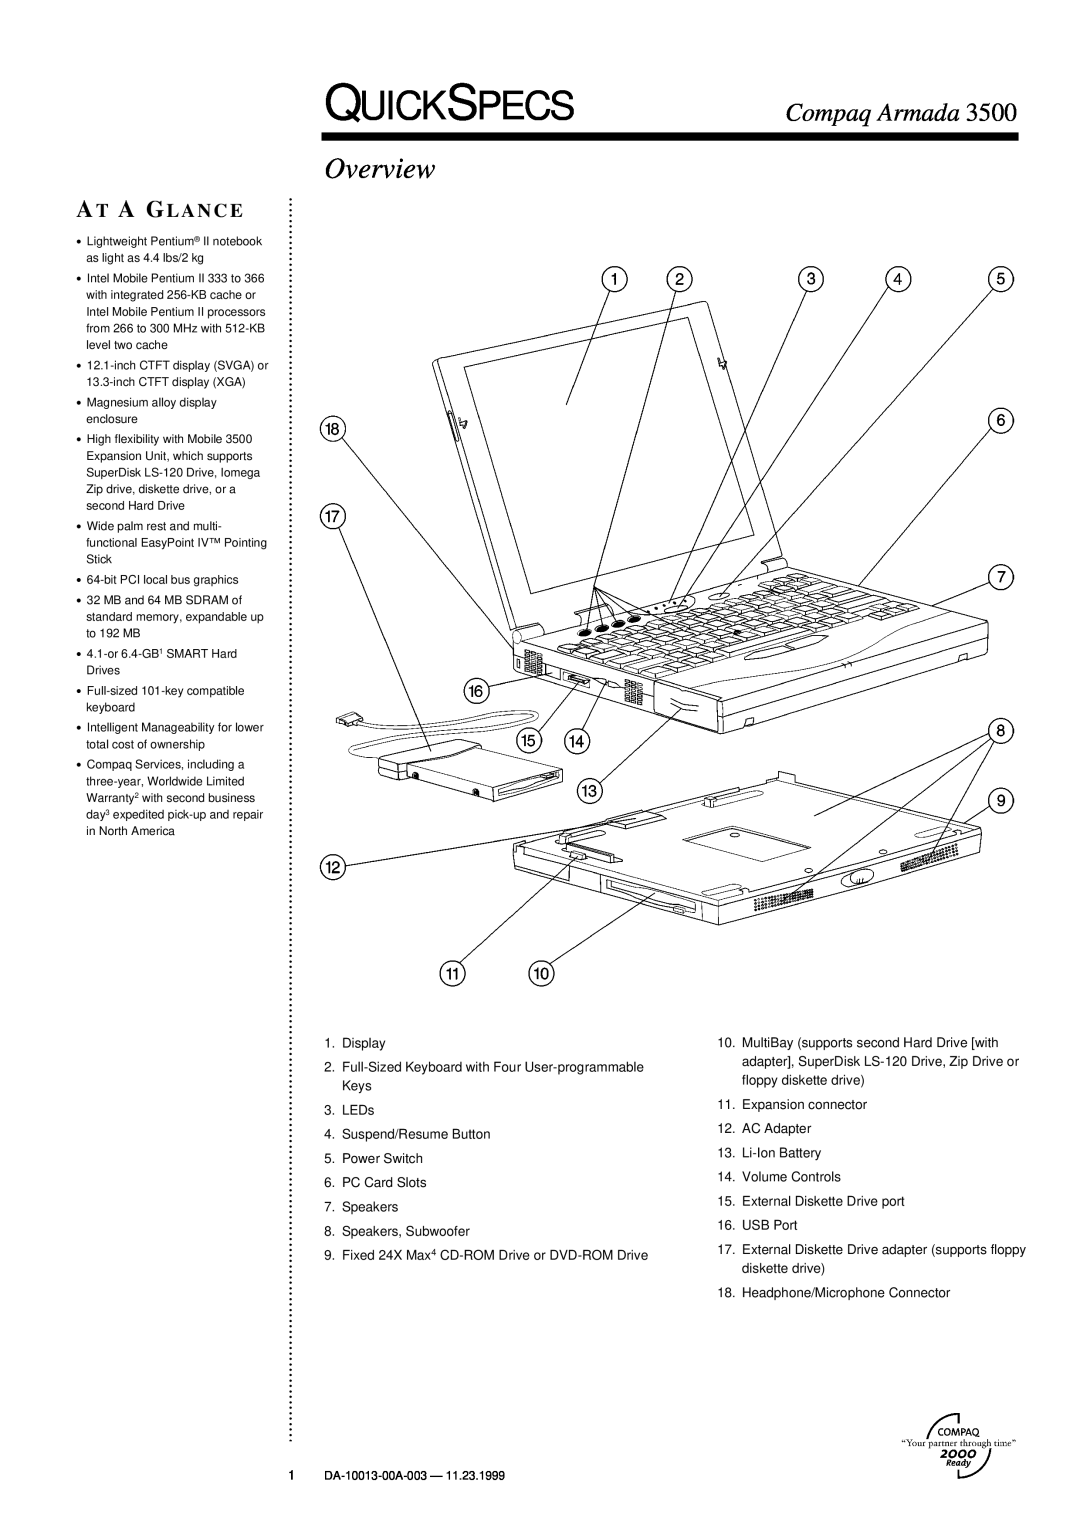 Compaq 3500 warranty Quickspecs, Overview, Compaq Armada, At A Glance 